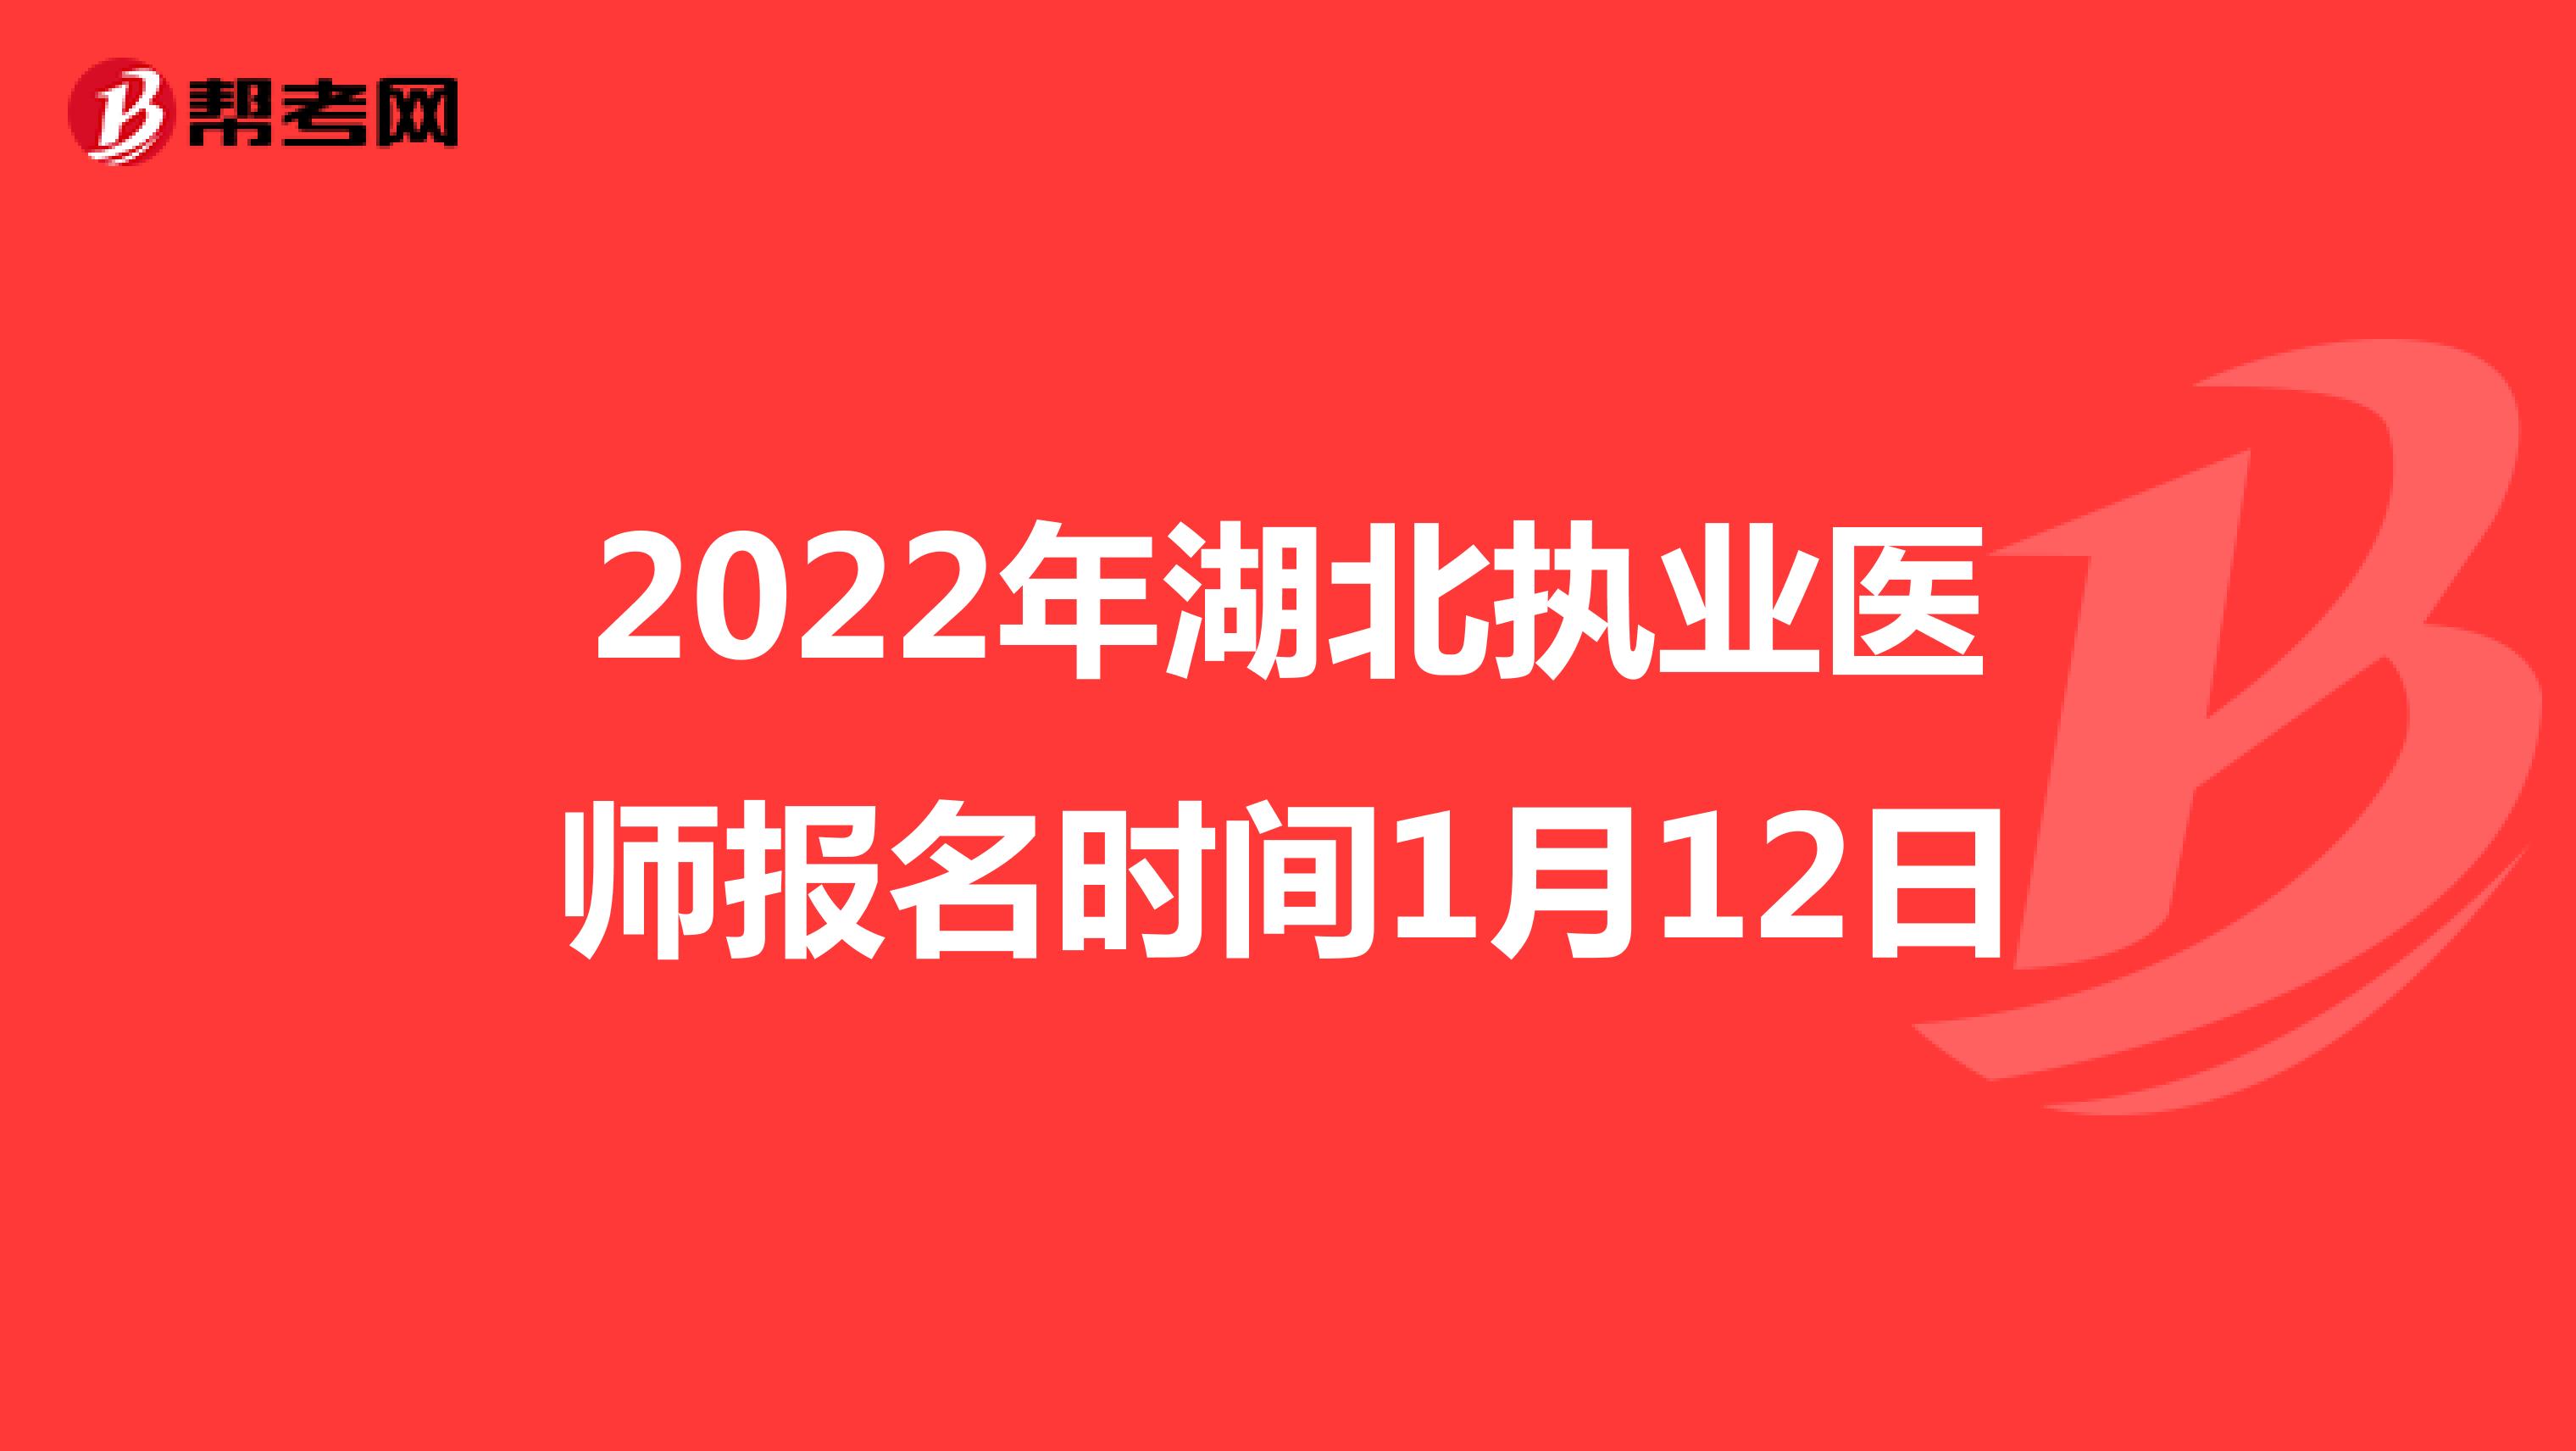 2022年湖北执业医师报名时间1月12日